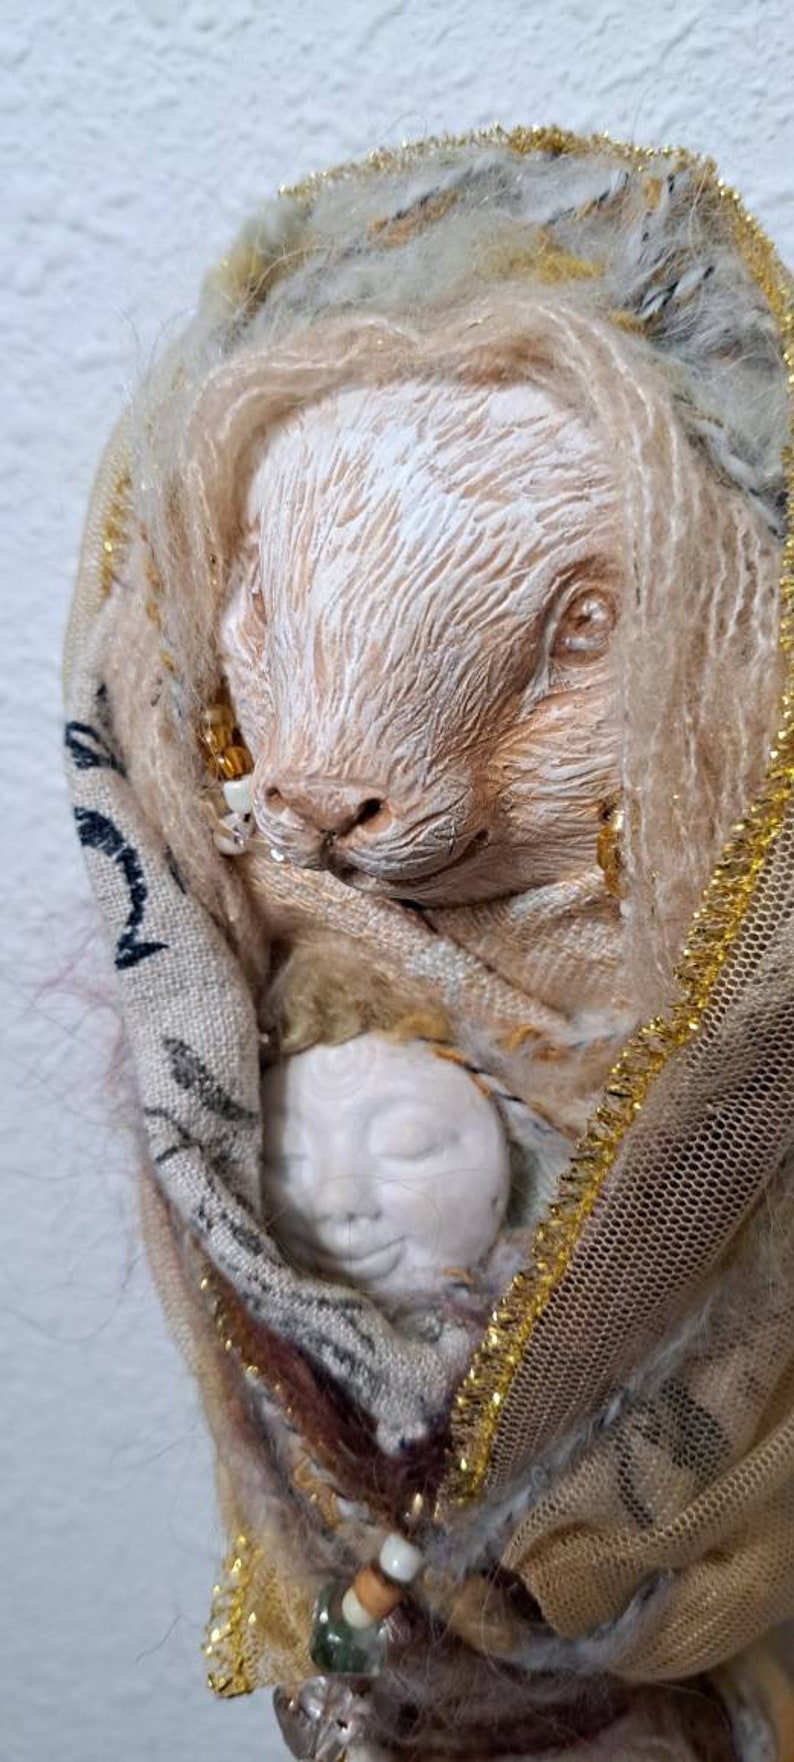 OOAK Art doll, Anthropomorphic Hare Spirit, Nature lover gift image 4